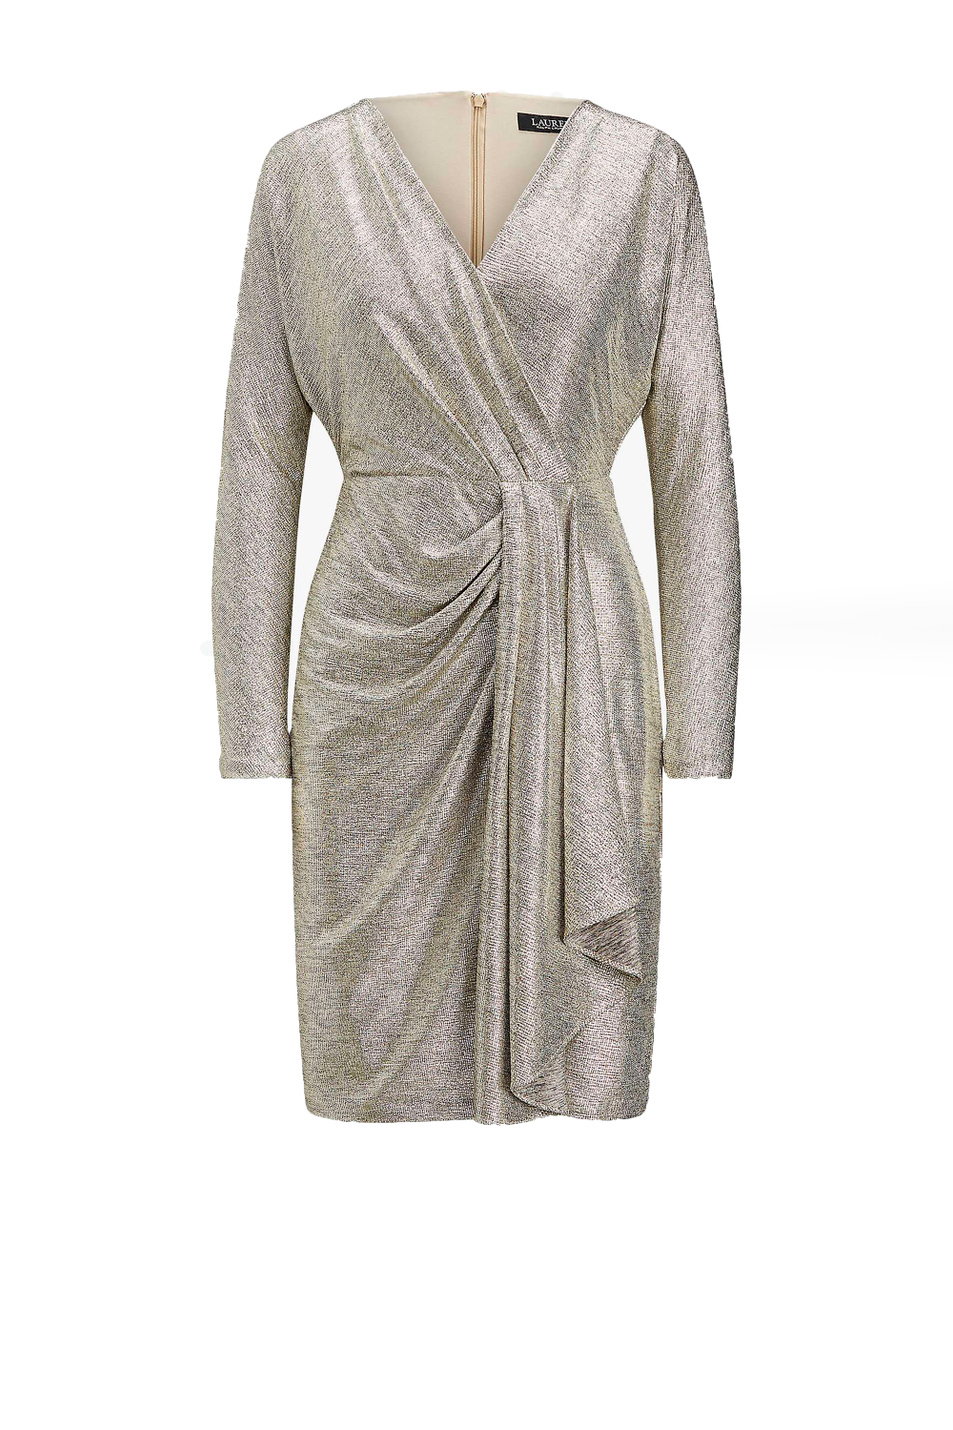 Lauren Коктейльное платье LYNNA с эффектом металлик (цвет ), артикул 253816865001 | Фото 1